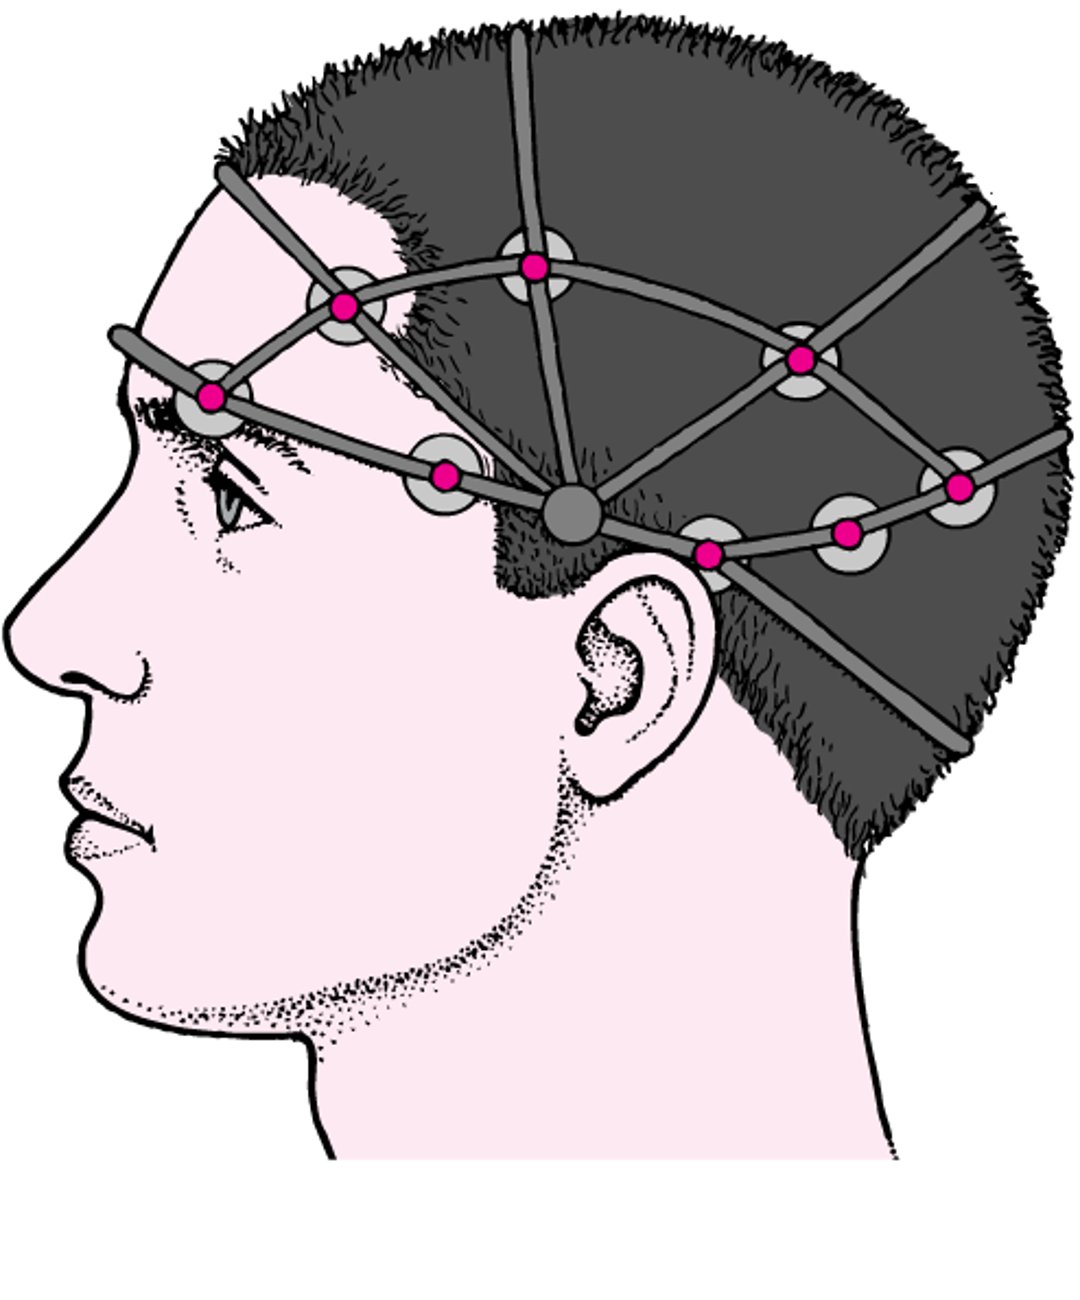 Electroencefalografía (EEG)